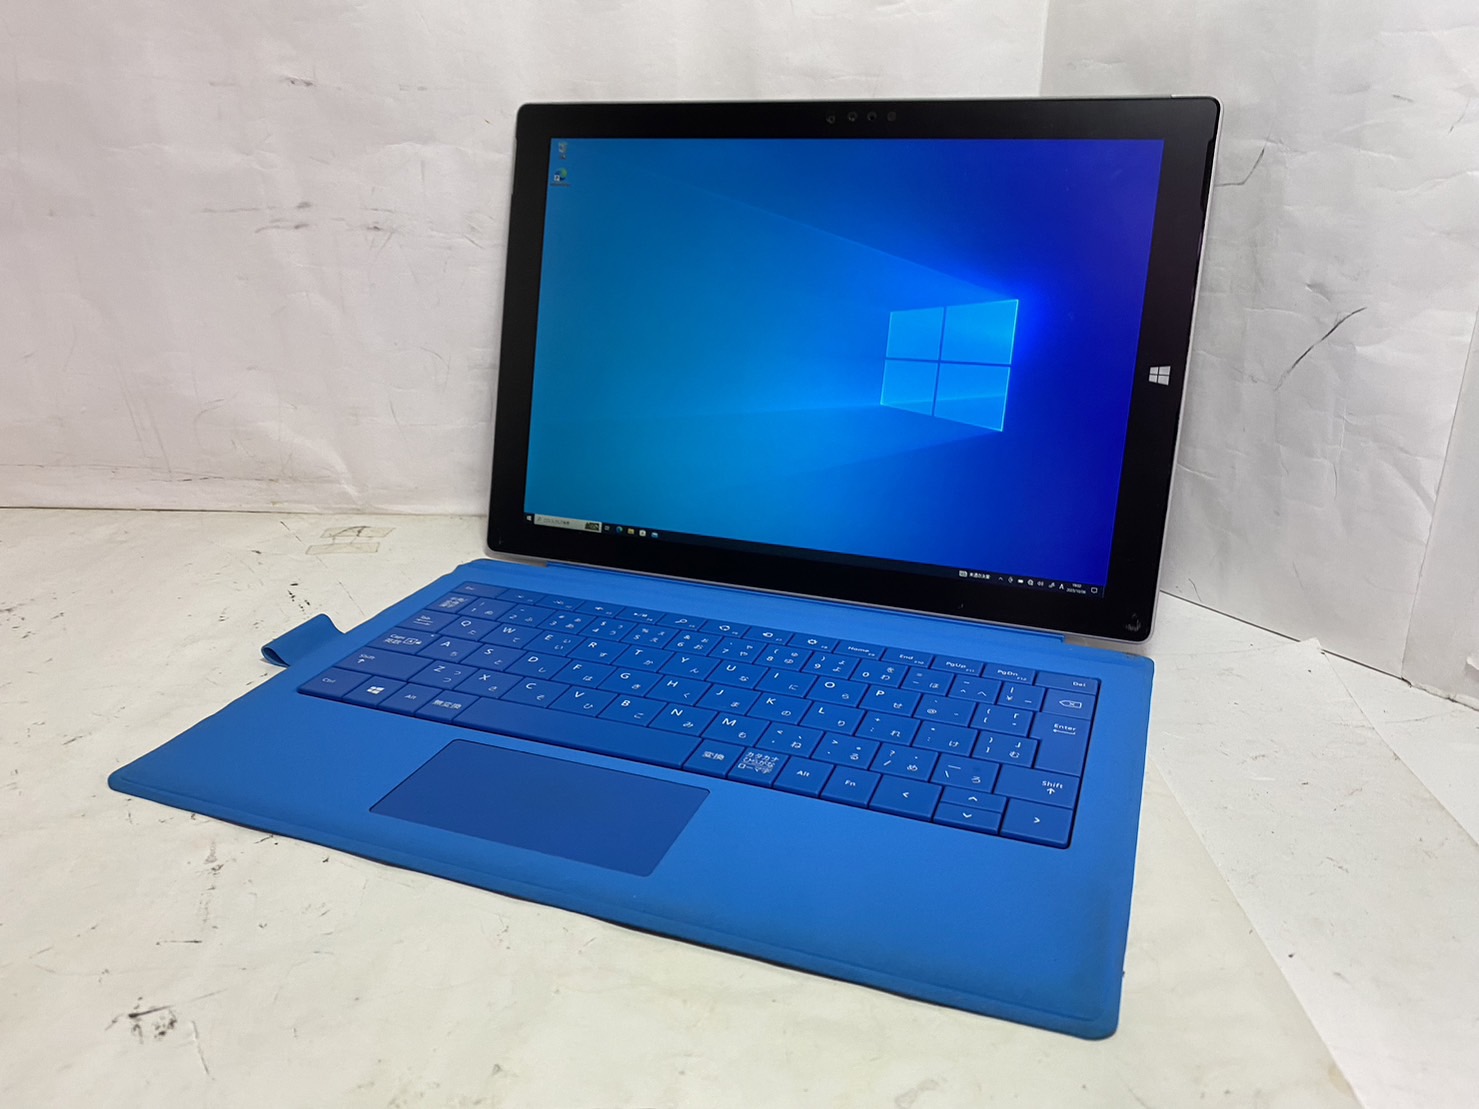 Microsoft(マイクロソフト) Surface Pro 3 1631の激安通販 - パソコンショップパウ